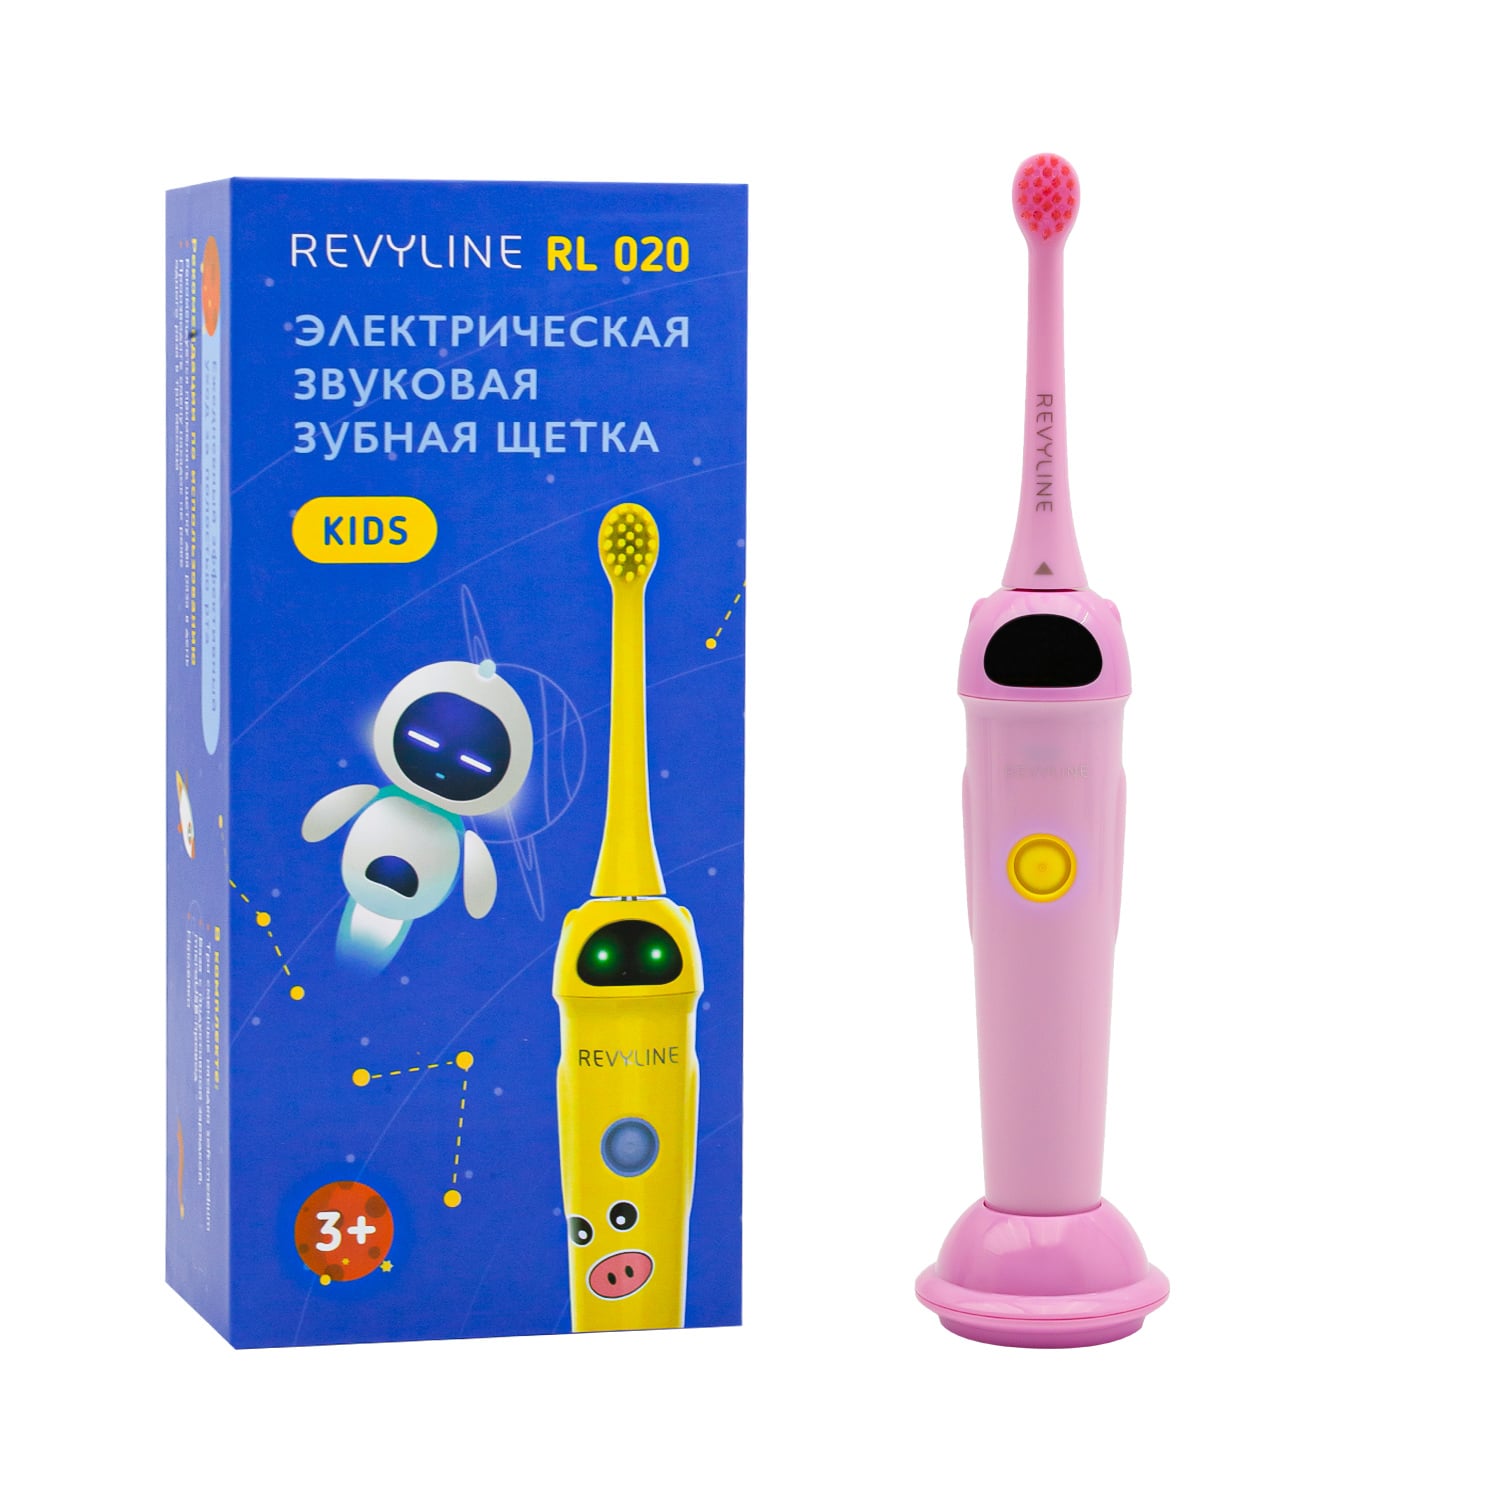 REVYLINE Детская электрическая звуковая зубная щетка RL 020 3+, розовая, 1 шт (REVYLINE, Электрические зубные щетки) цена и фото